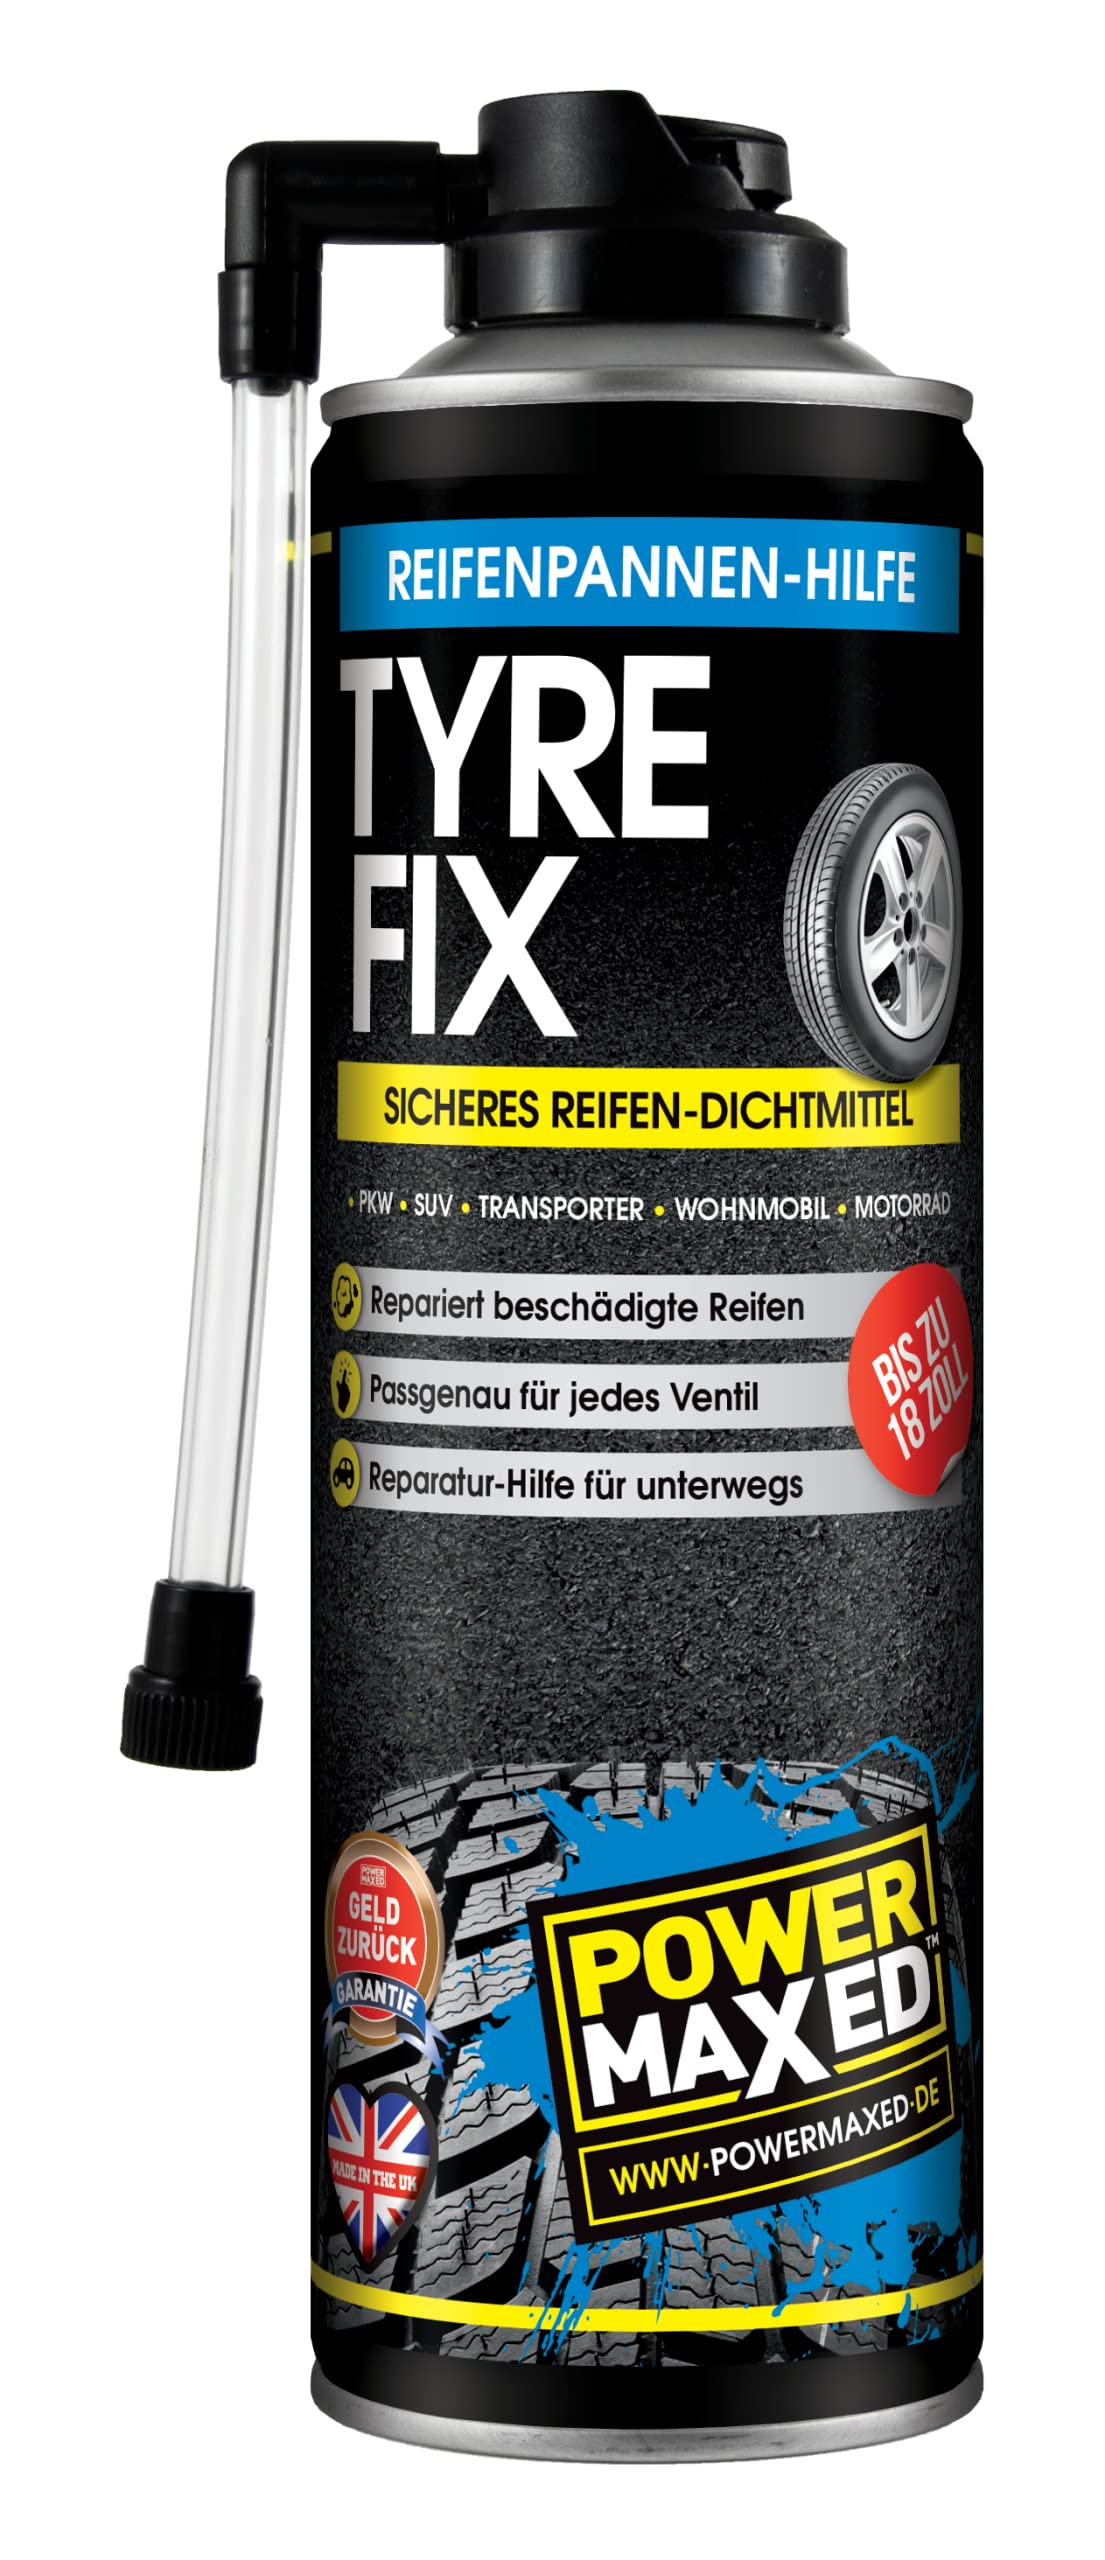 POWERMAXED TYRE-FIX 500ml - Schnelle Reifenpannen-Hilfe bis 18 Zoll | Reifendichtmittel Reifenreparatur Set von POWERMAXED